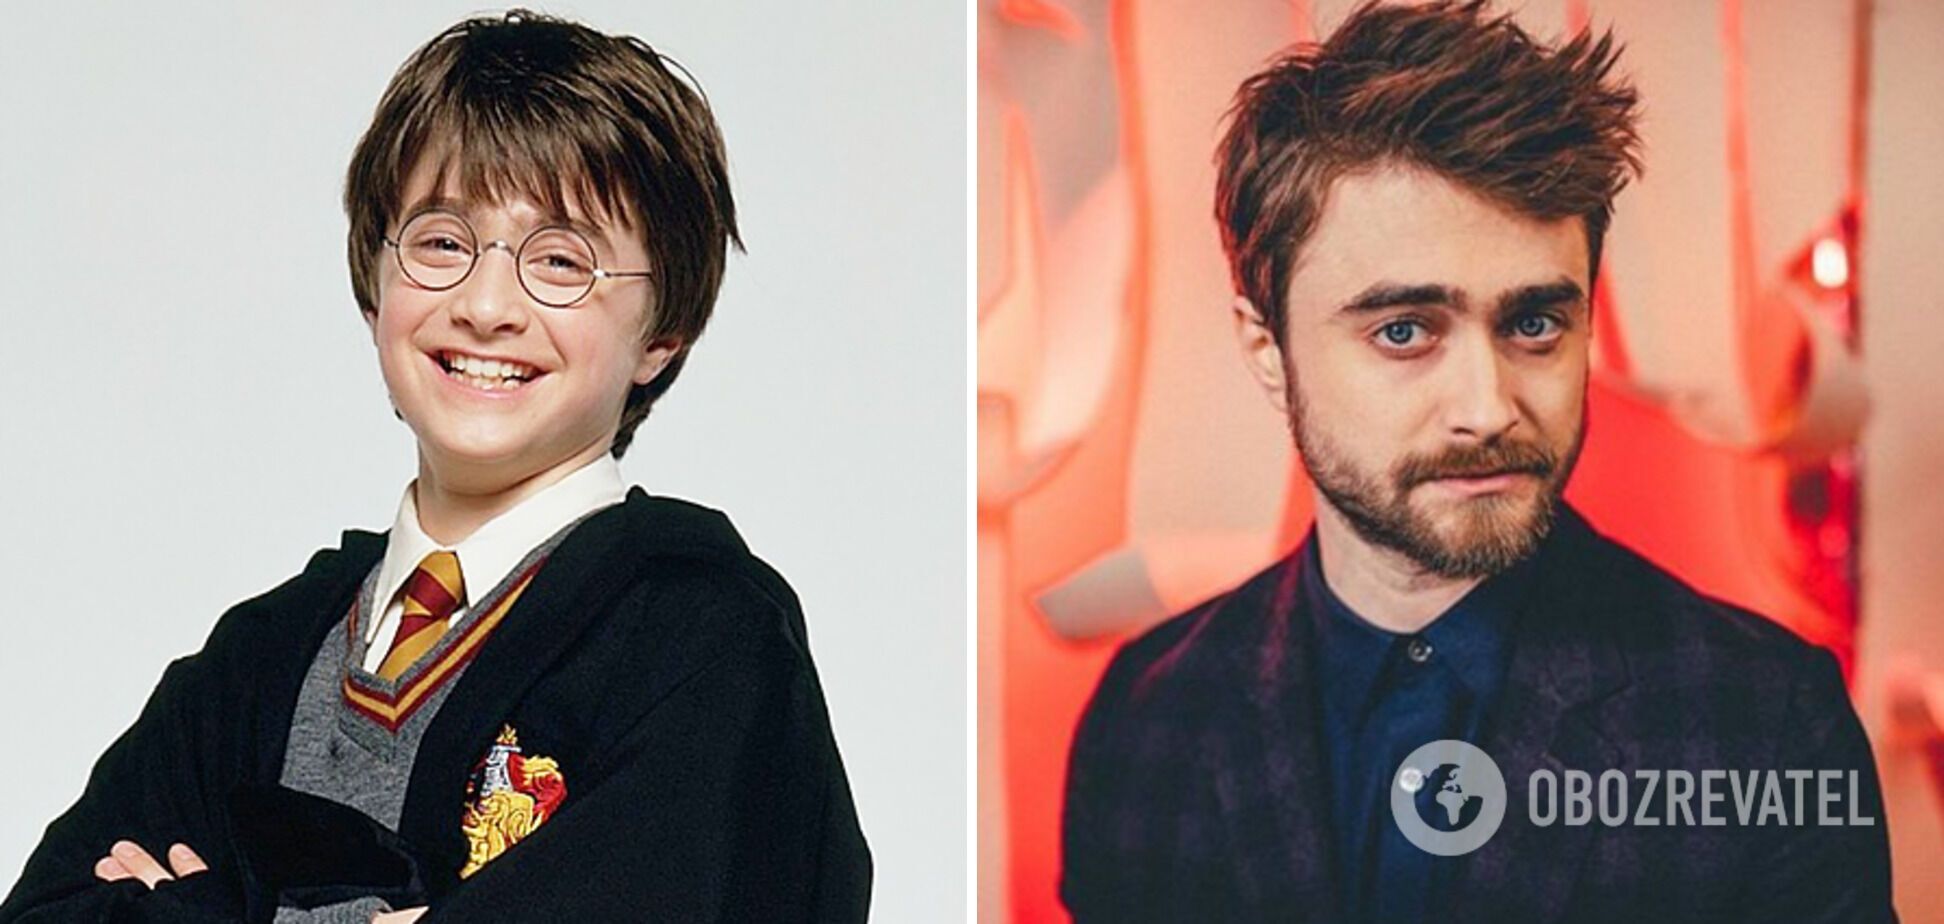 Гарри Поттера 20 лет спустя